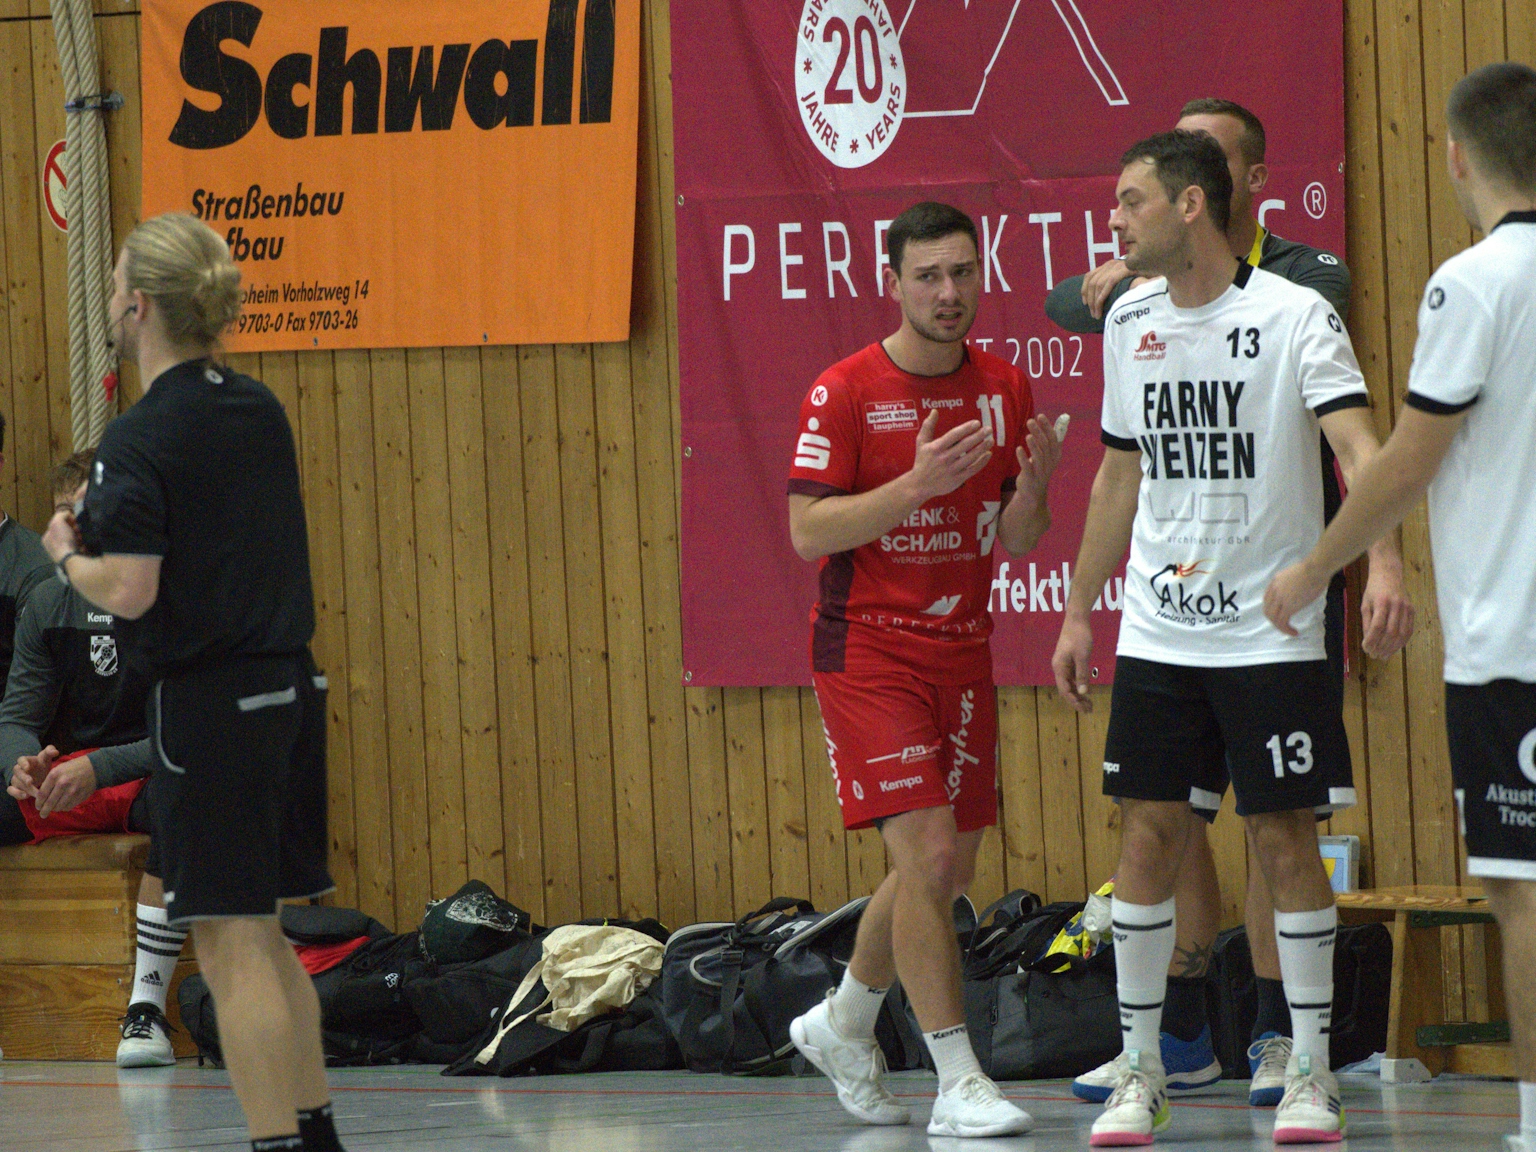 In der Sporthalle läuft ein Handballspieler des HRW-Laupheim in rotem Trikot an zwei Spielern des TV Altenstadt vorbei. Werbebanner und Sporttaschen sind im Hintergrund zu sehen.